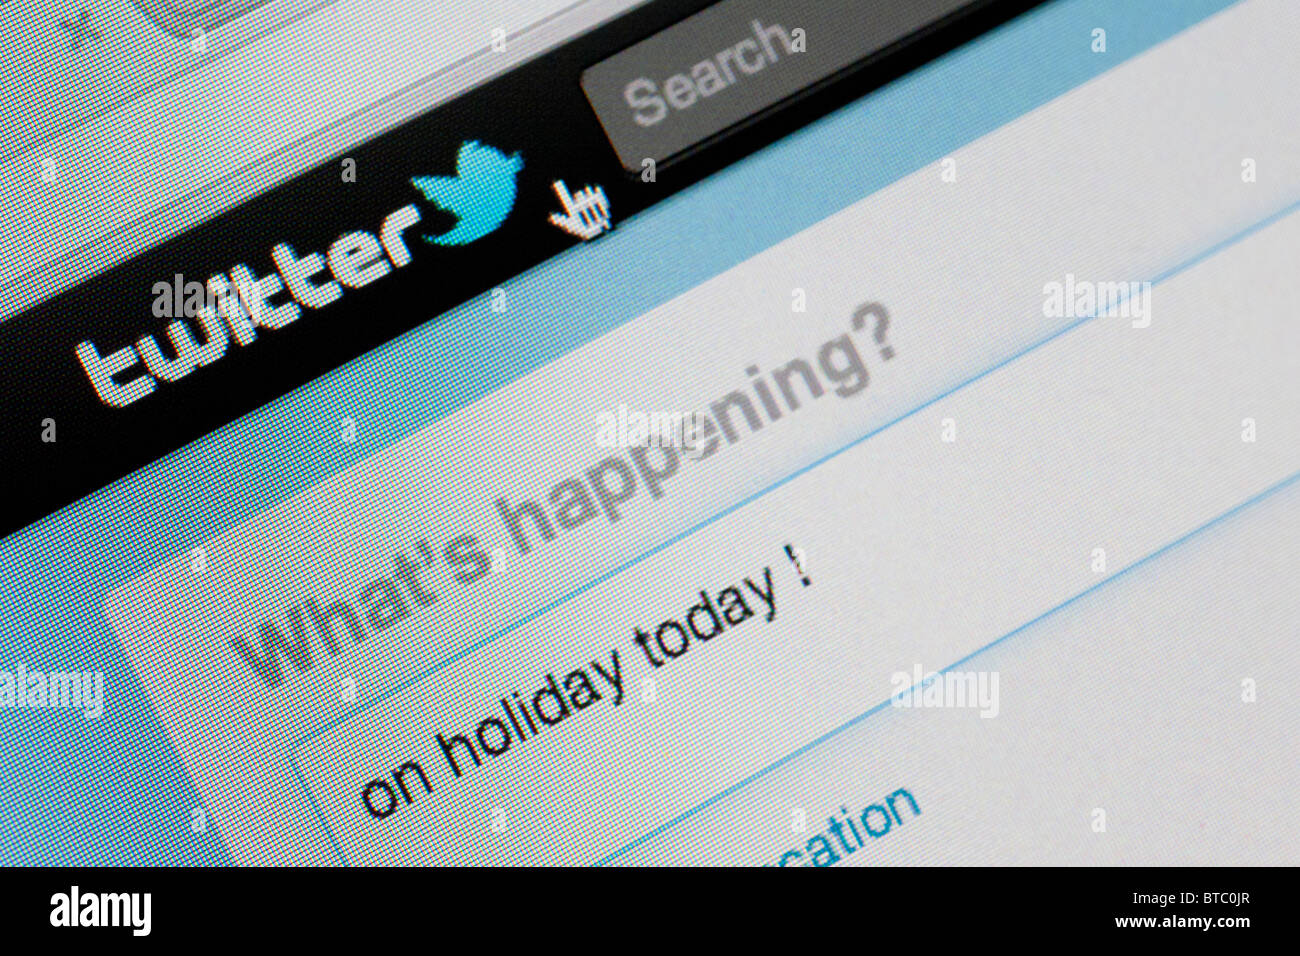 Dettaglio di screenshot dal sito web di Twitter instant messaging website Foto Stock